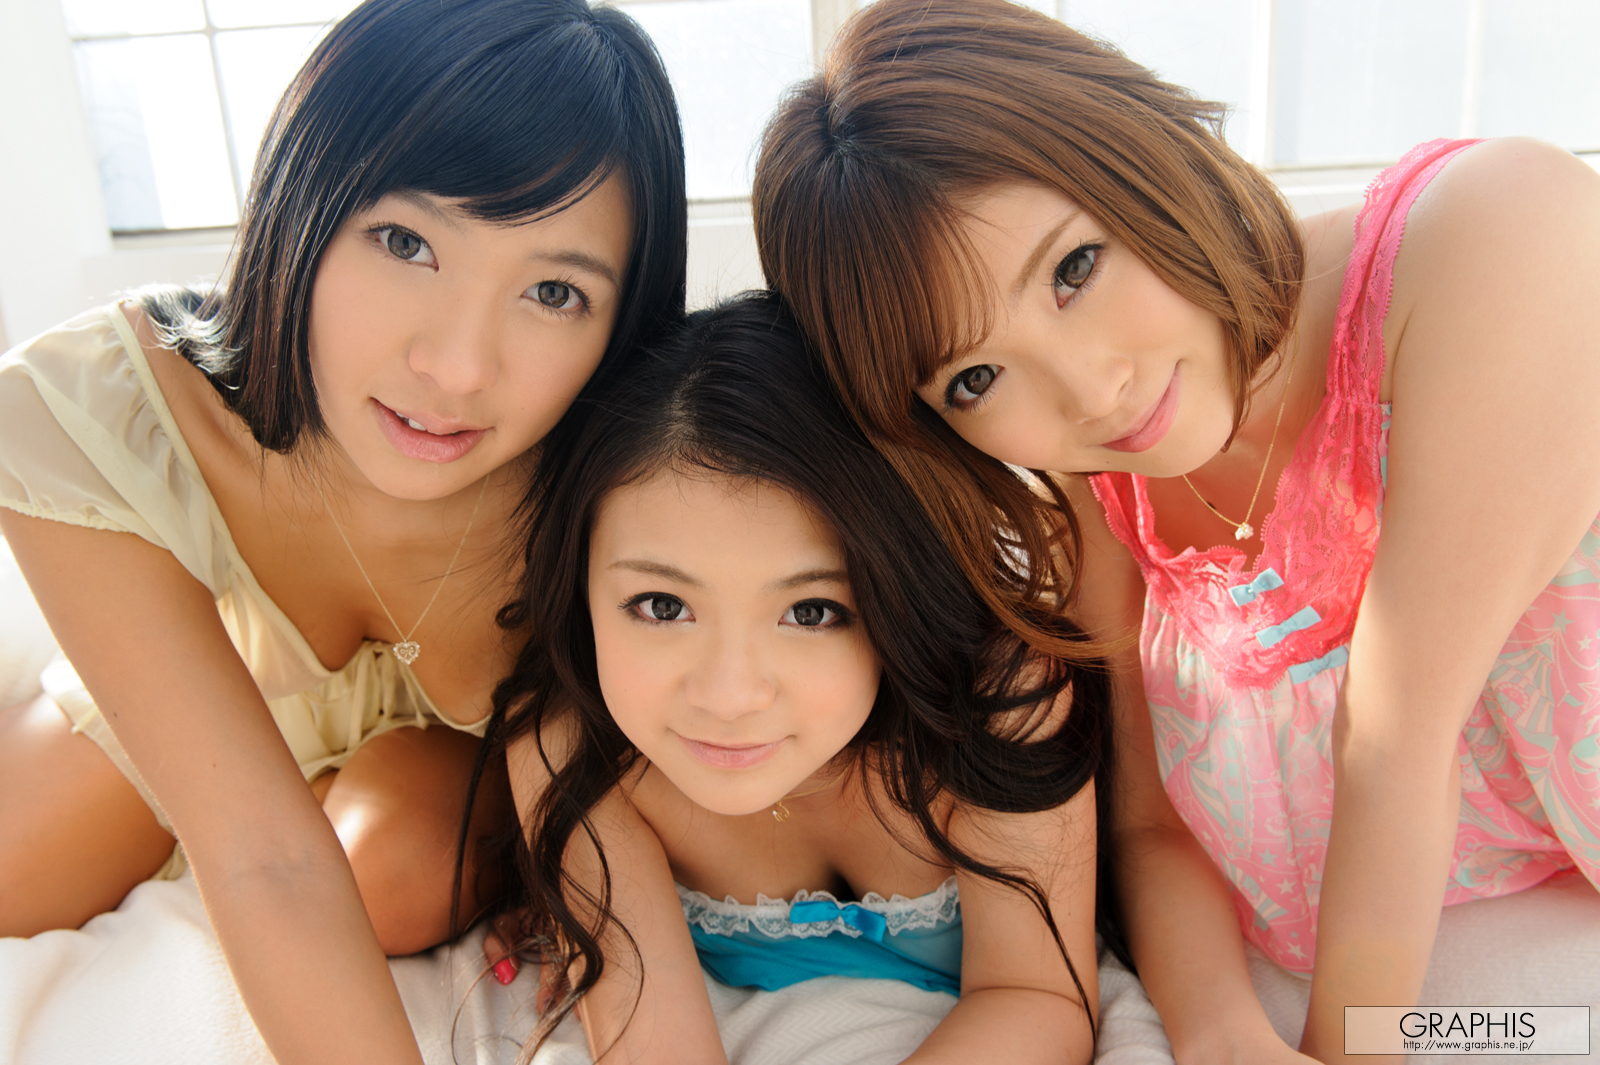 nana-ogura-lina-kato-kana-tsuruta-nude-graphis-girls-2012-20